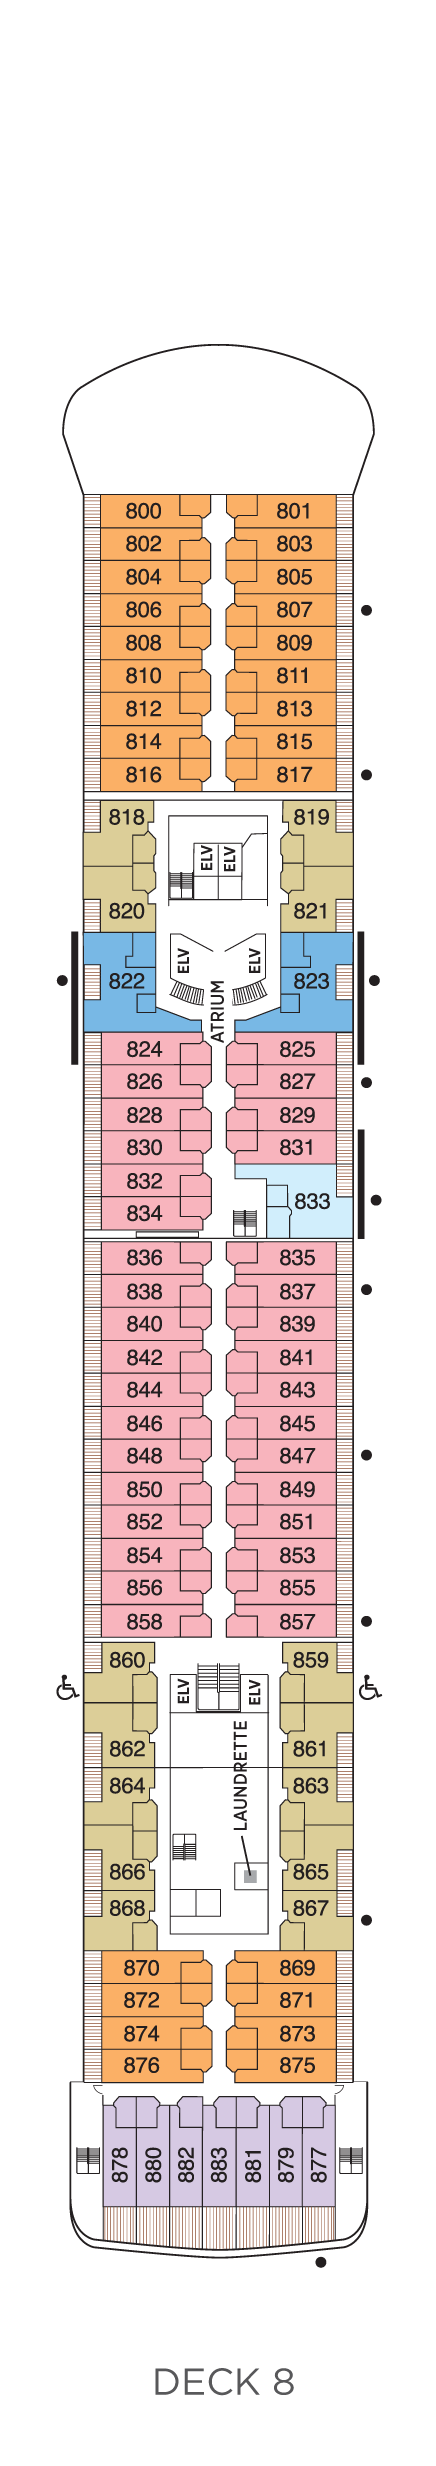 Deck 8 Deck Plan